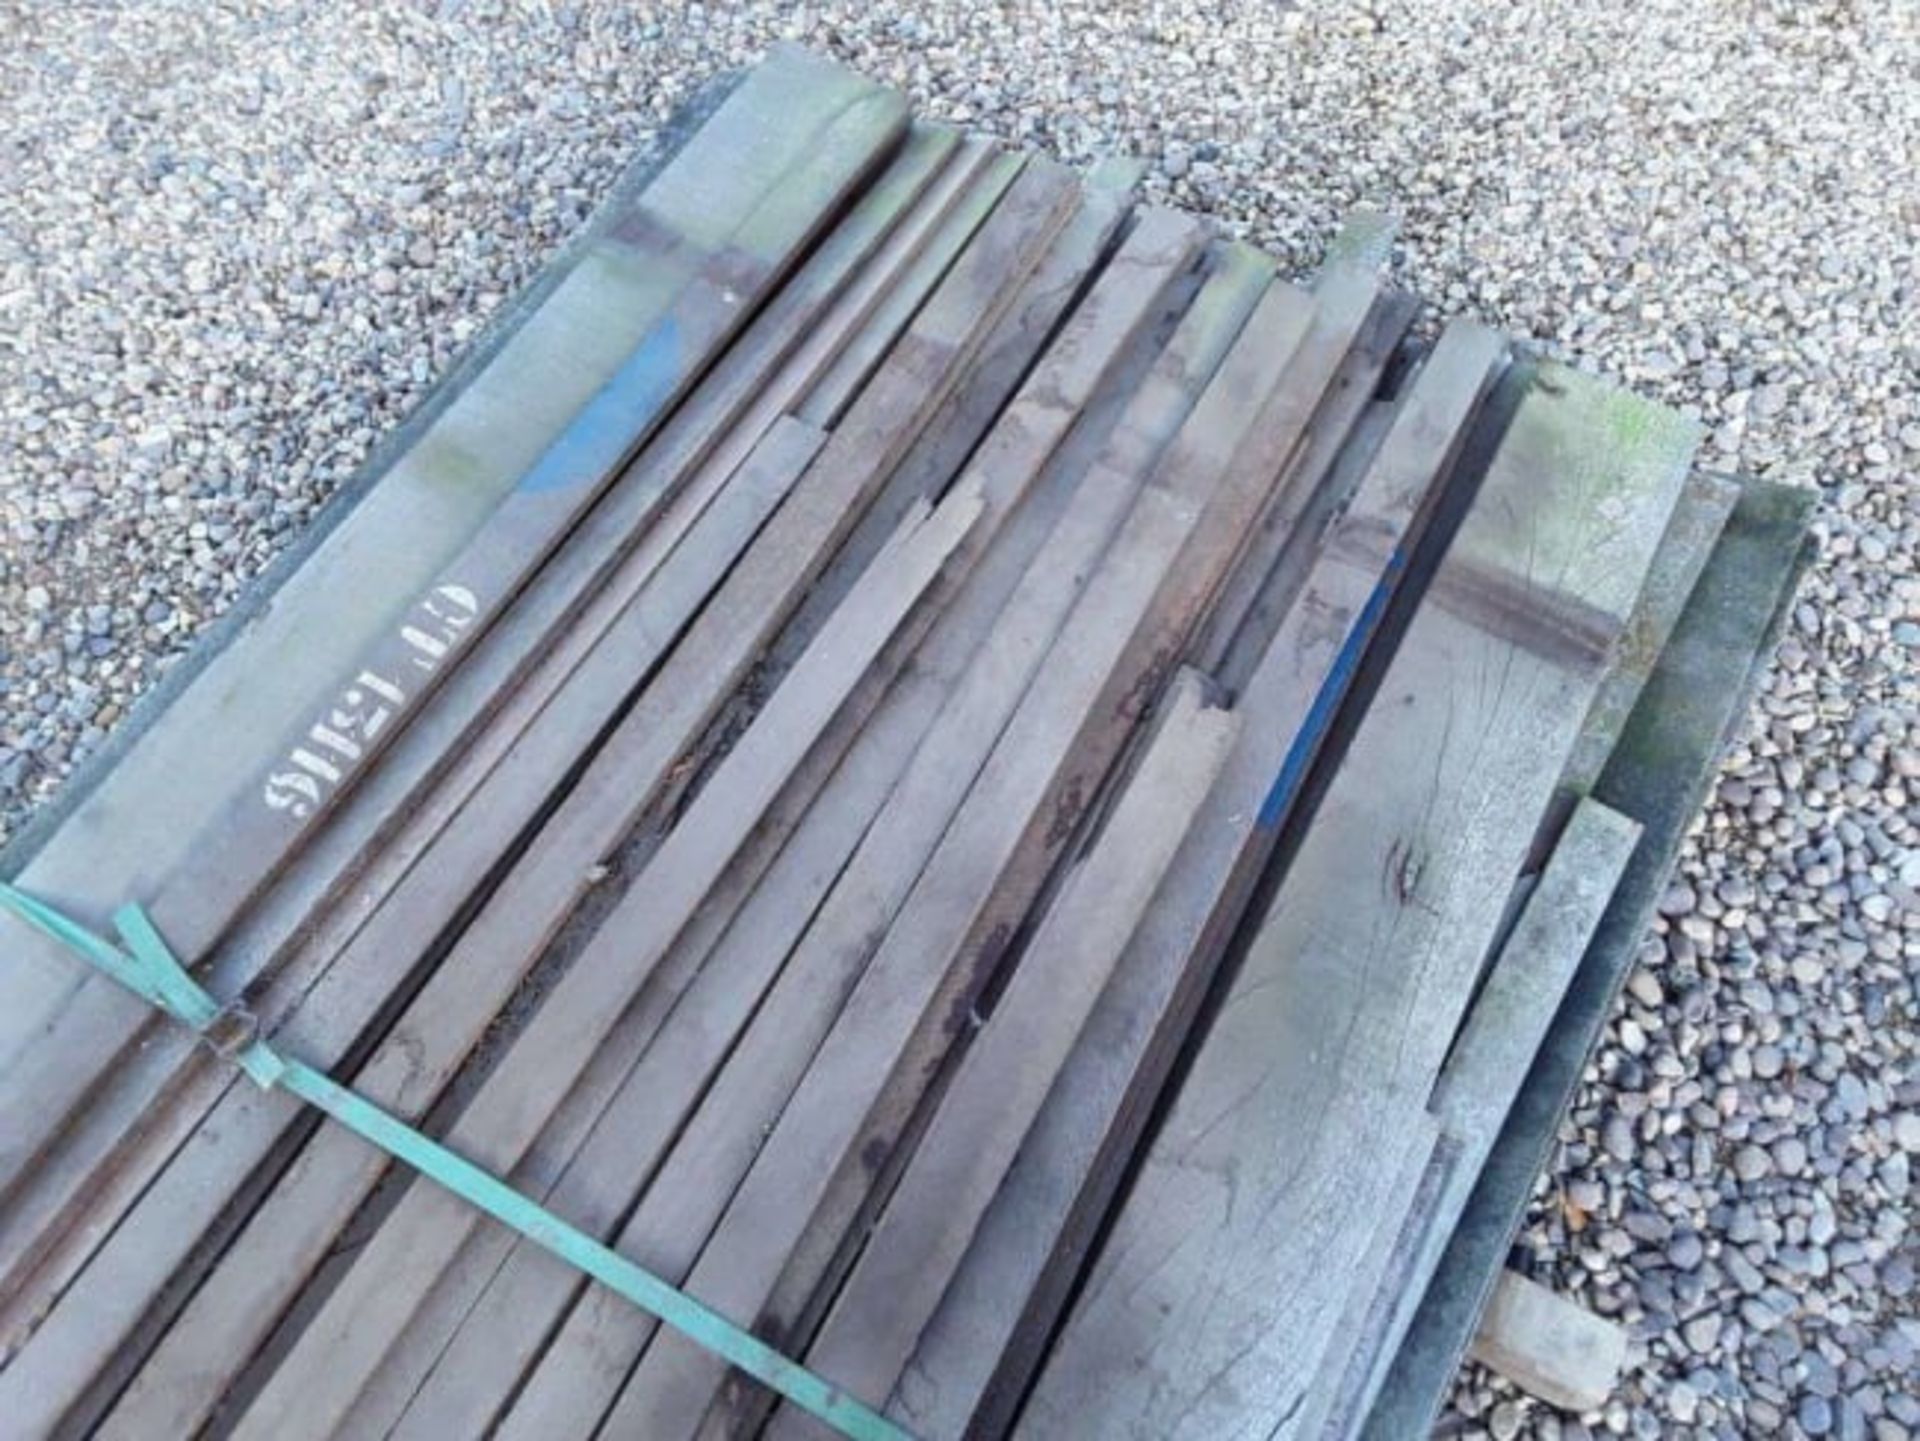 Hardwood Air Dried Sawn African Ekki Ironwood Strips ( Mixed Sizes ) - Image 4 of 6